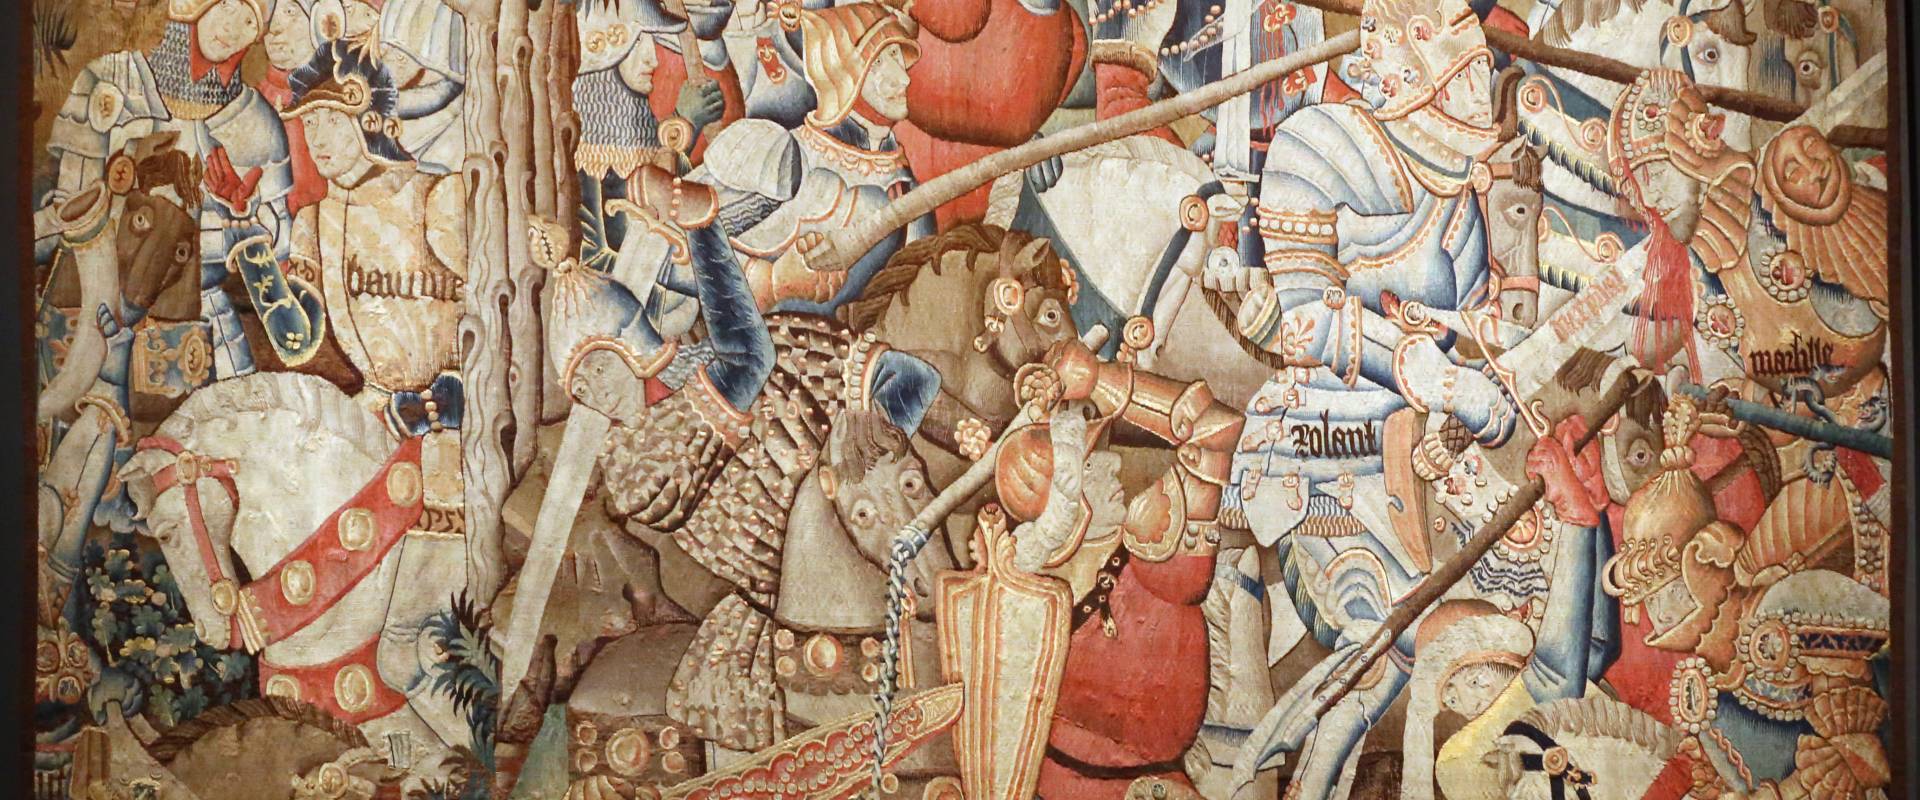 Manifattura fiamminga (prob. tournai), arazzo con la battaglia di roncisvalle, 1475-1500 ca. (v&amp;a) 01 foto di Sailko